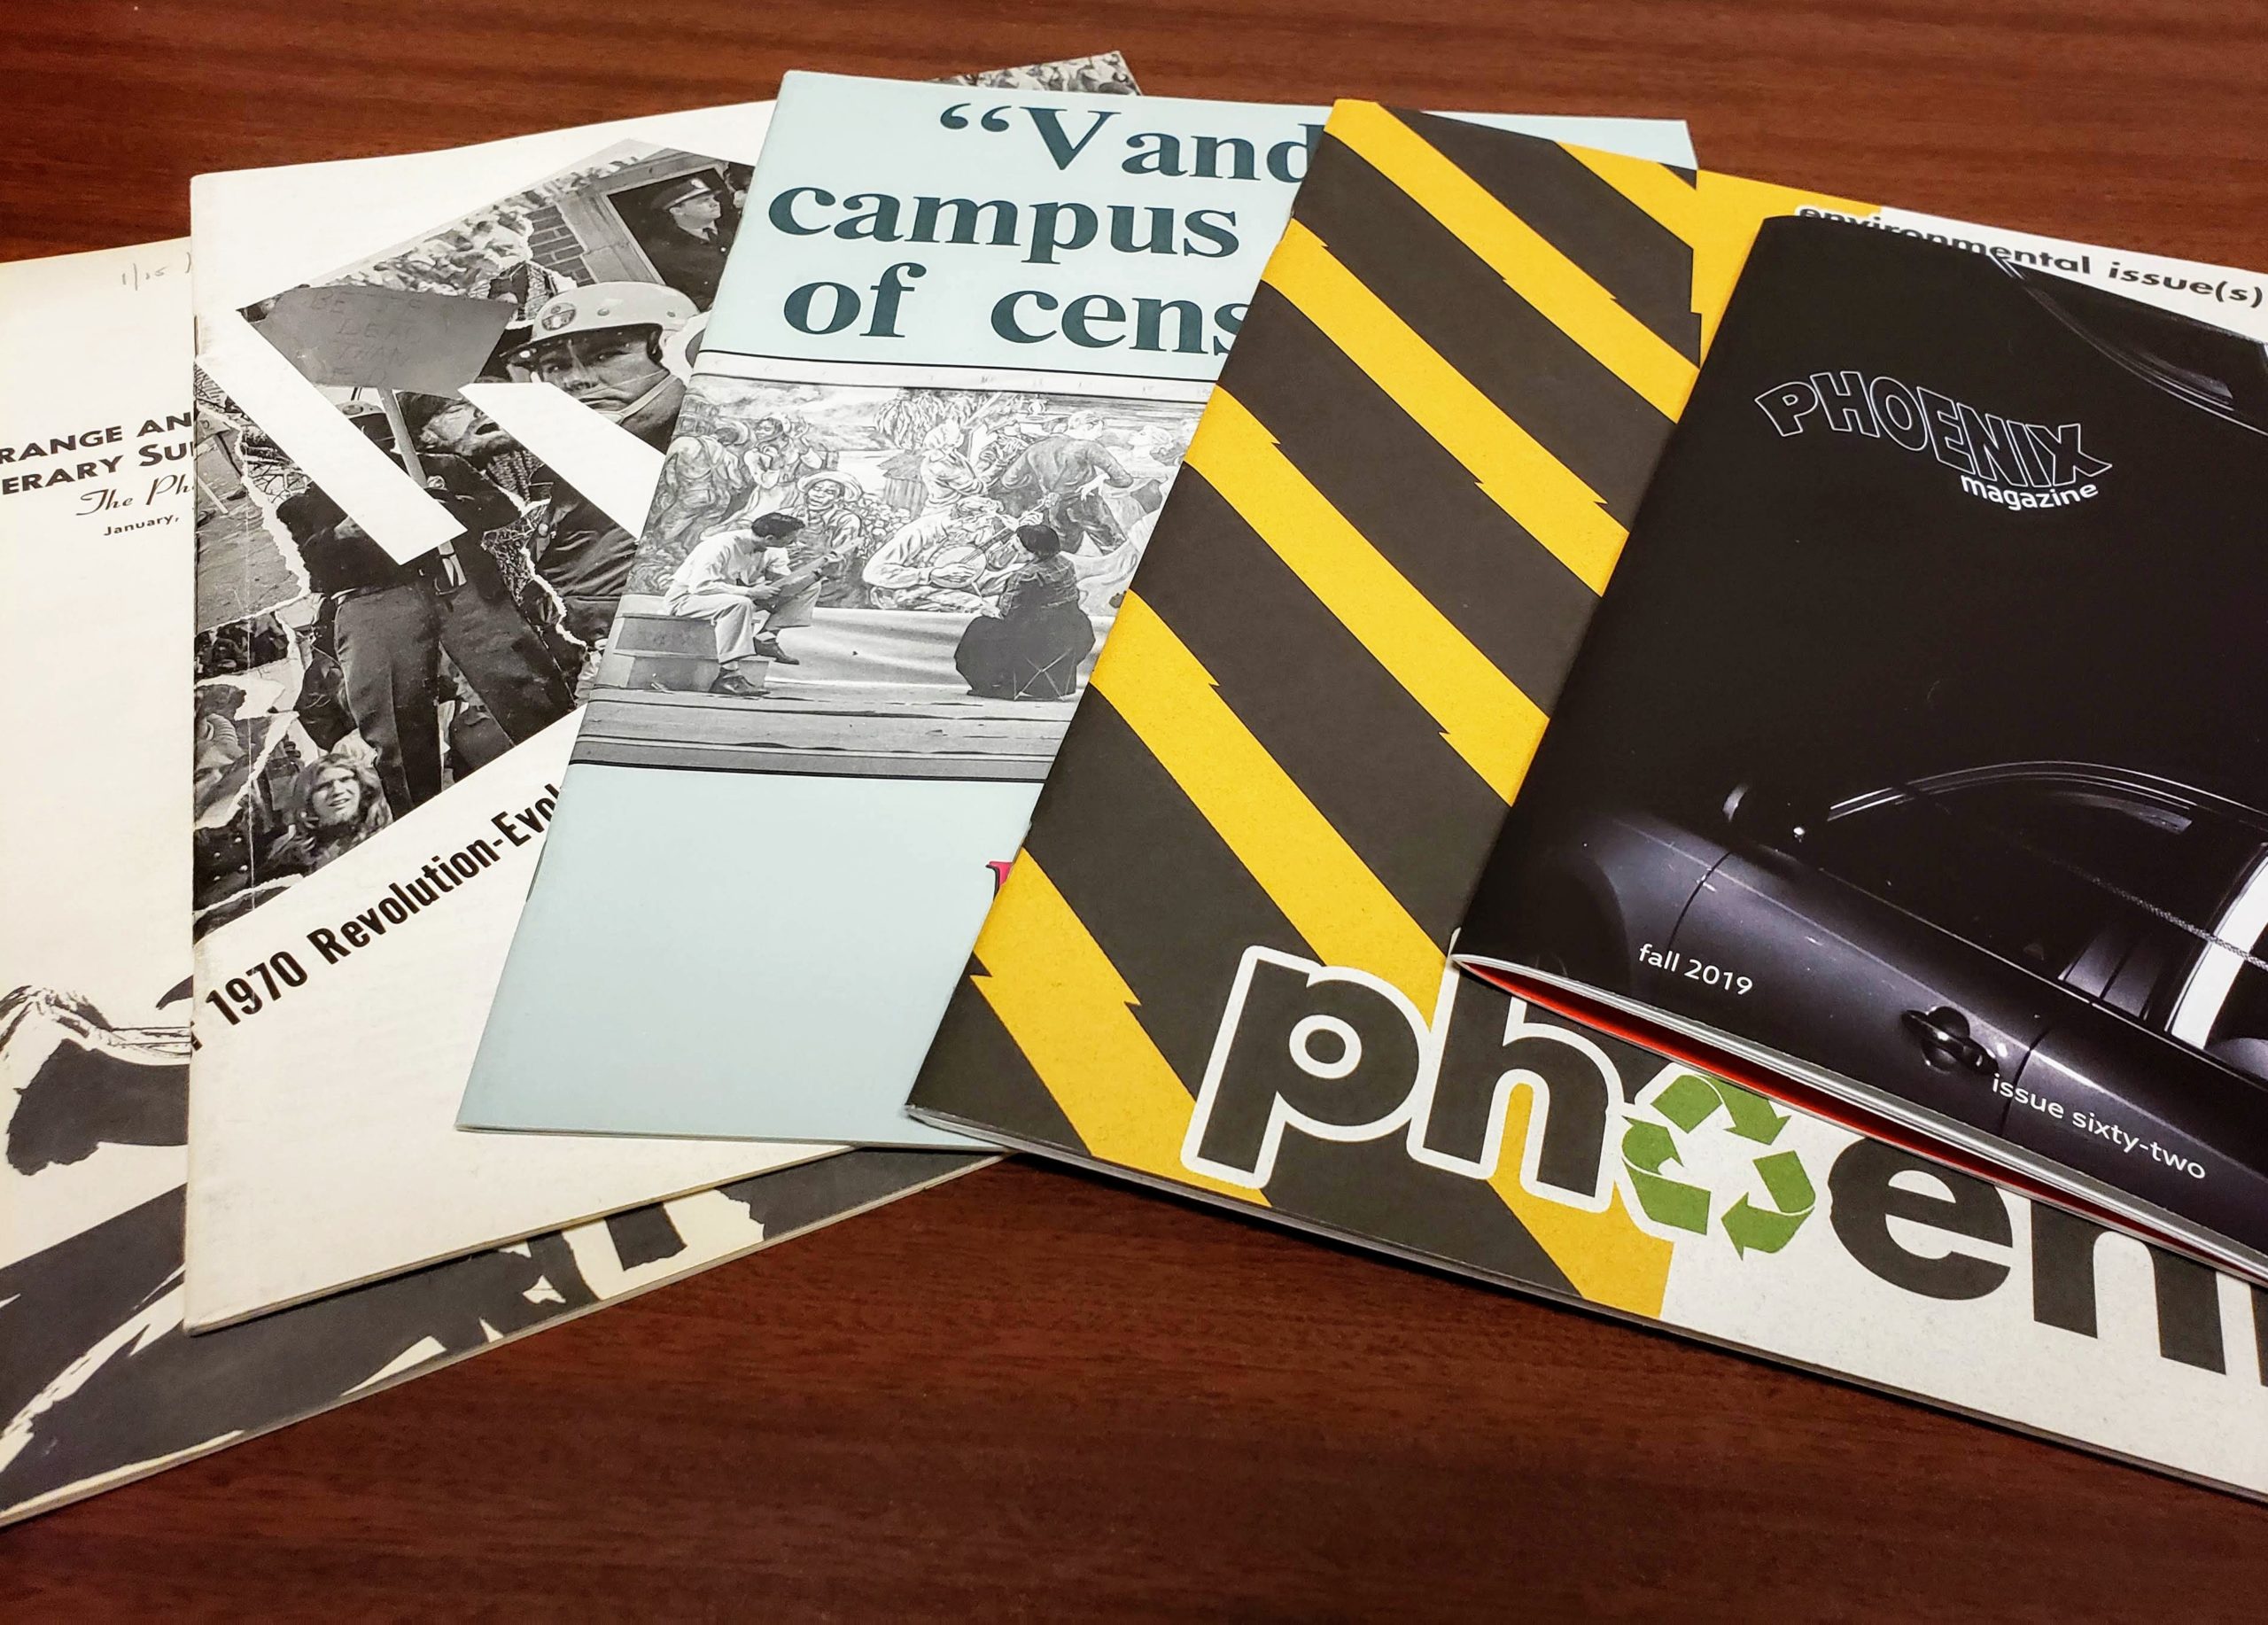 Phoenix Magazine: 60 years of arts and literature at UT